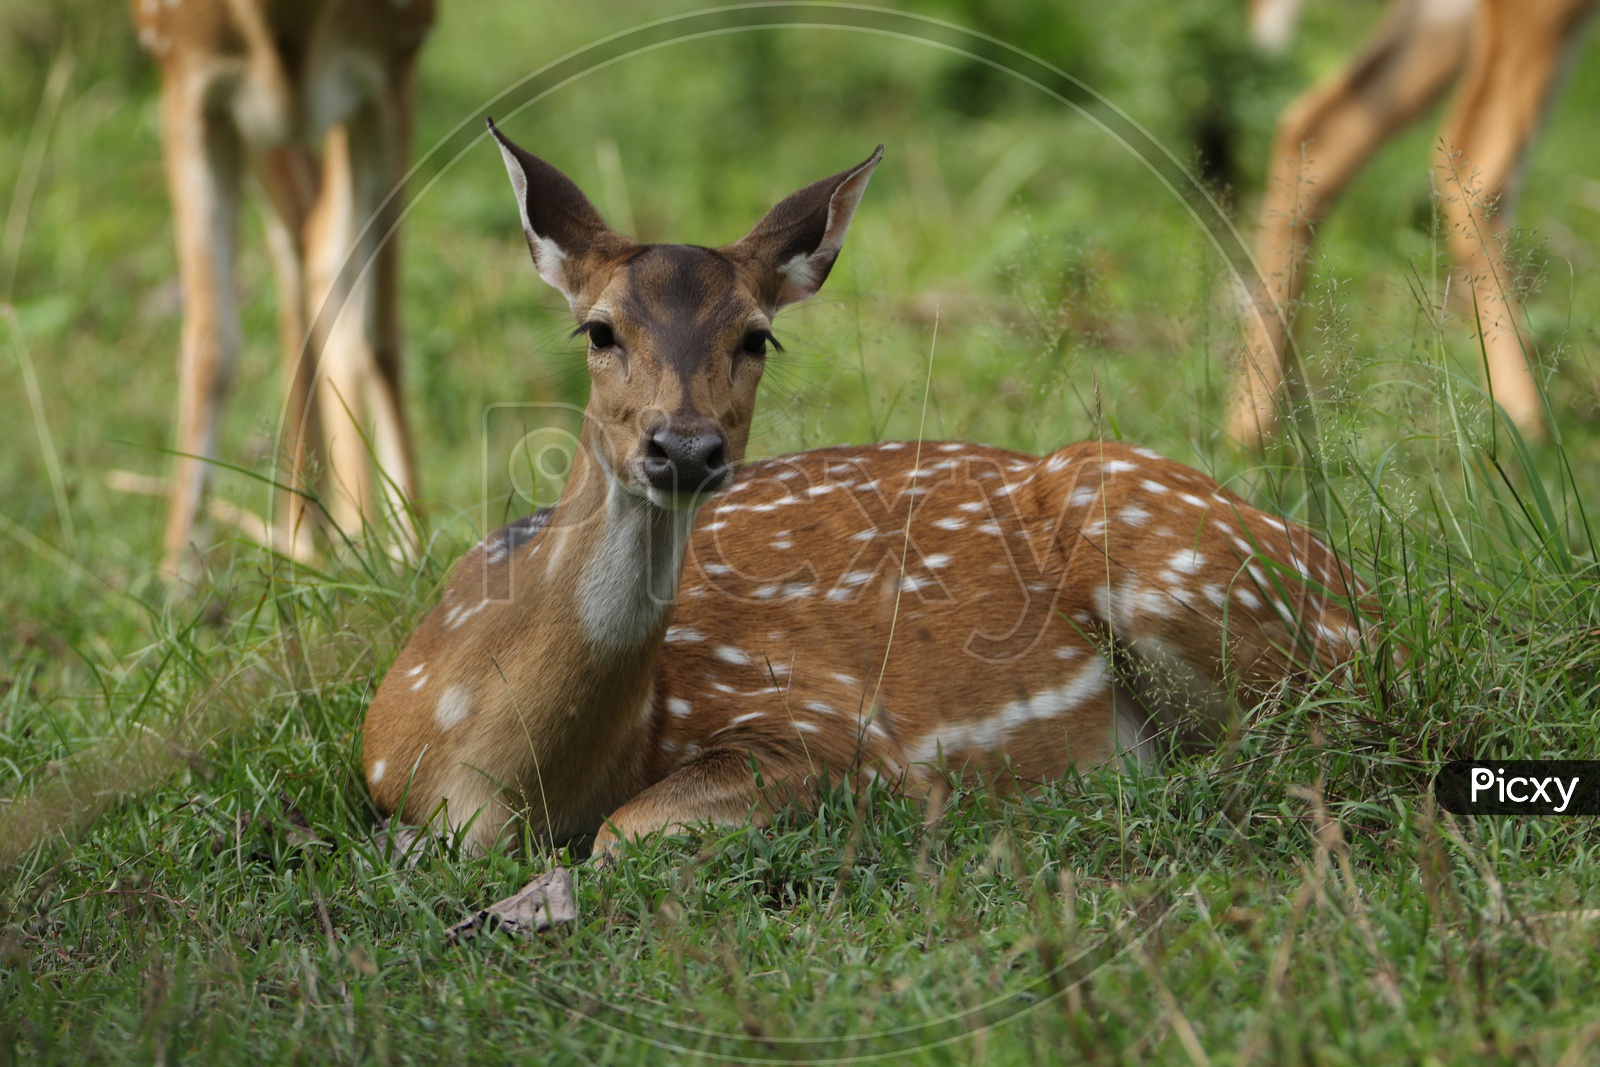 Deer at Parambikulam tiger reserve